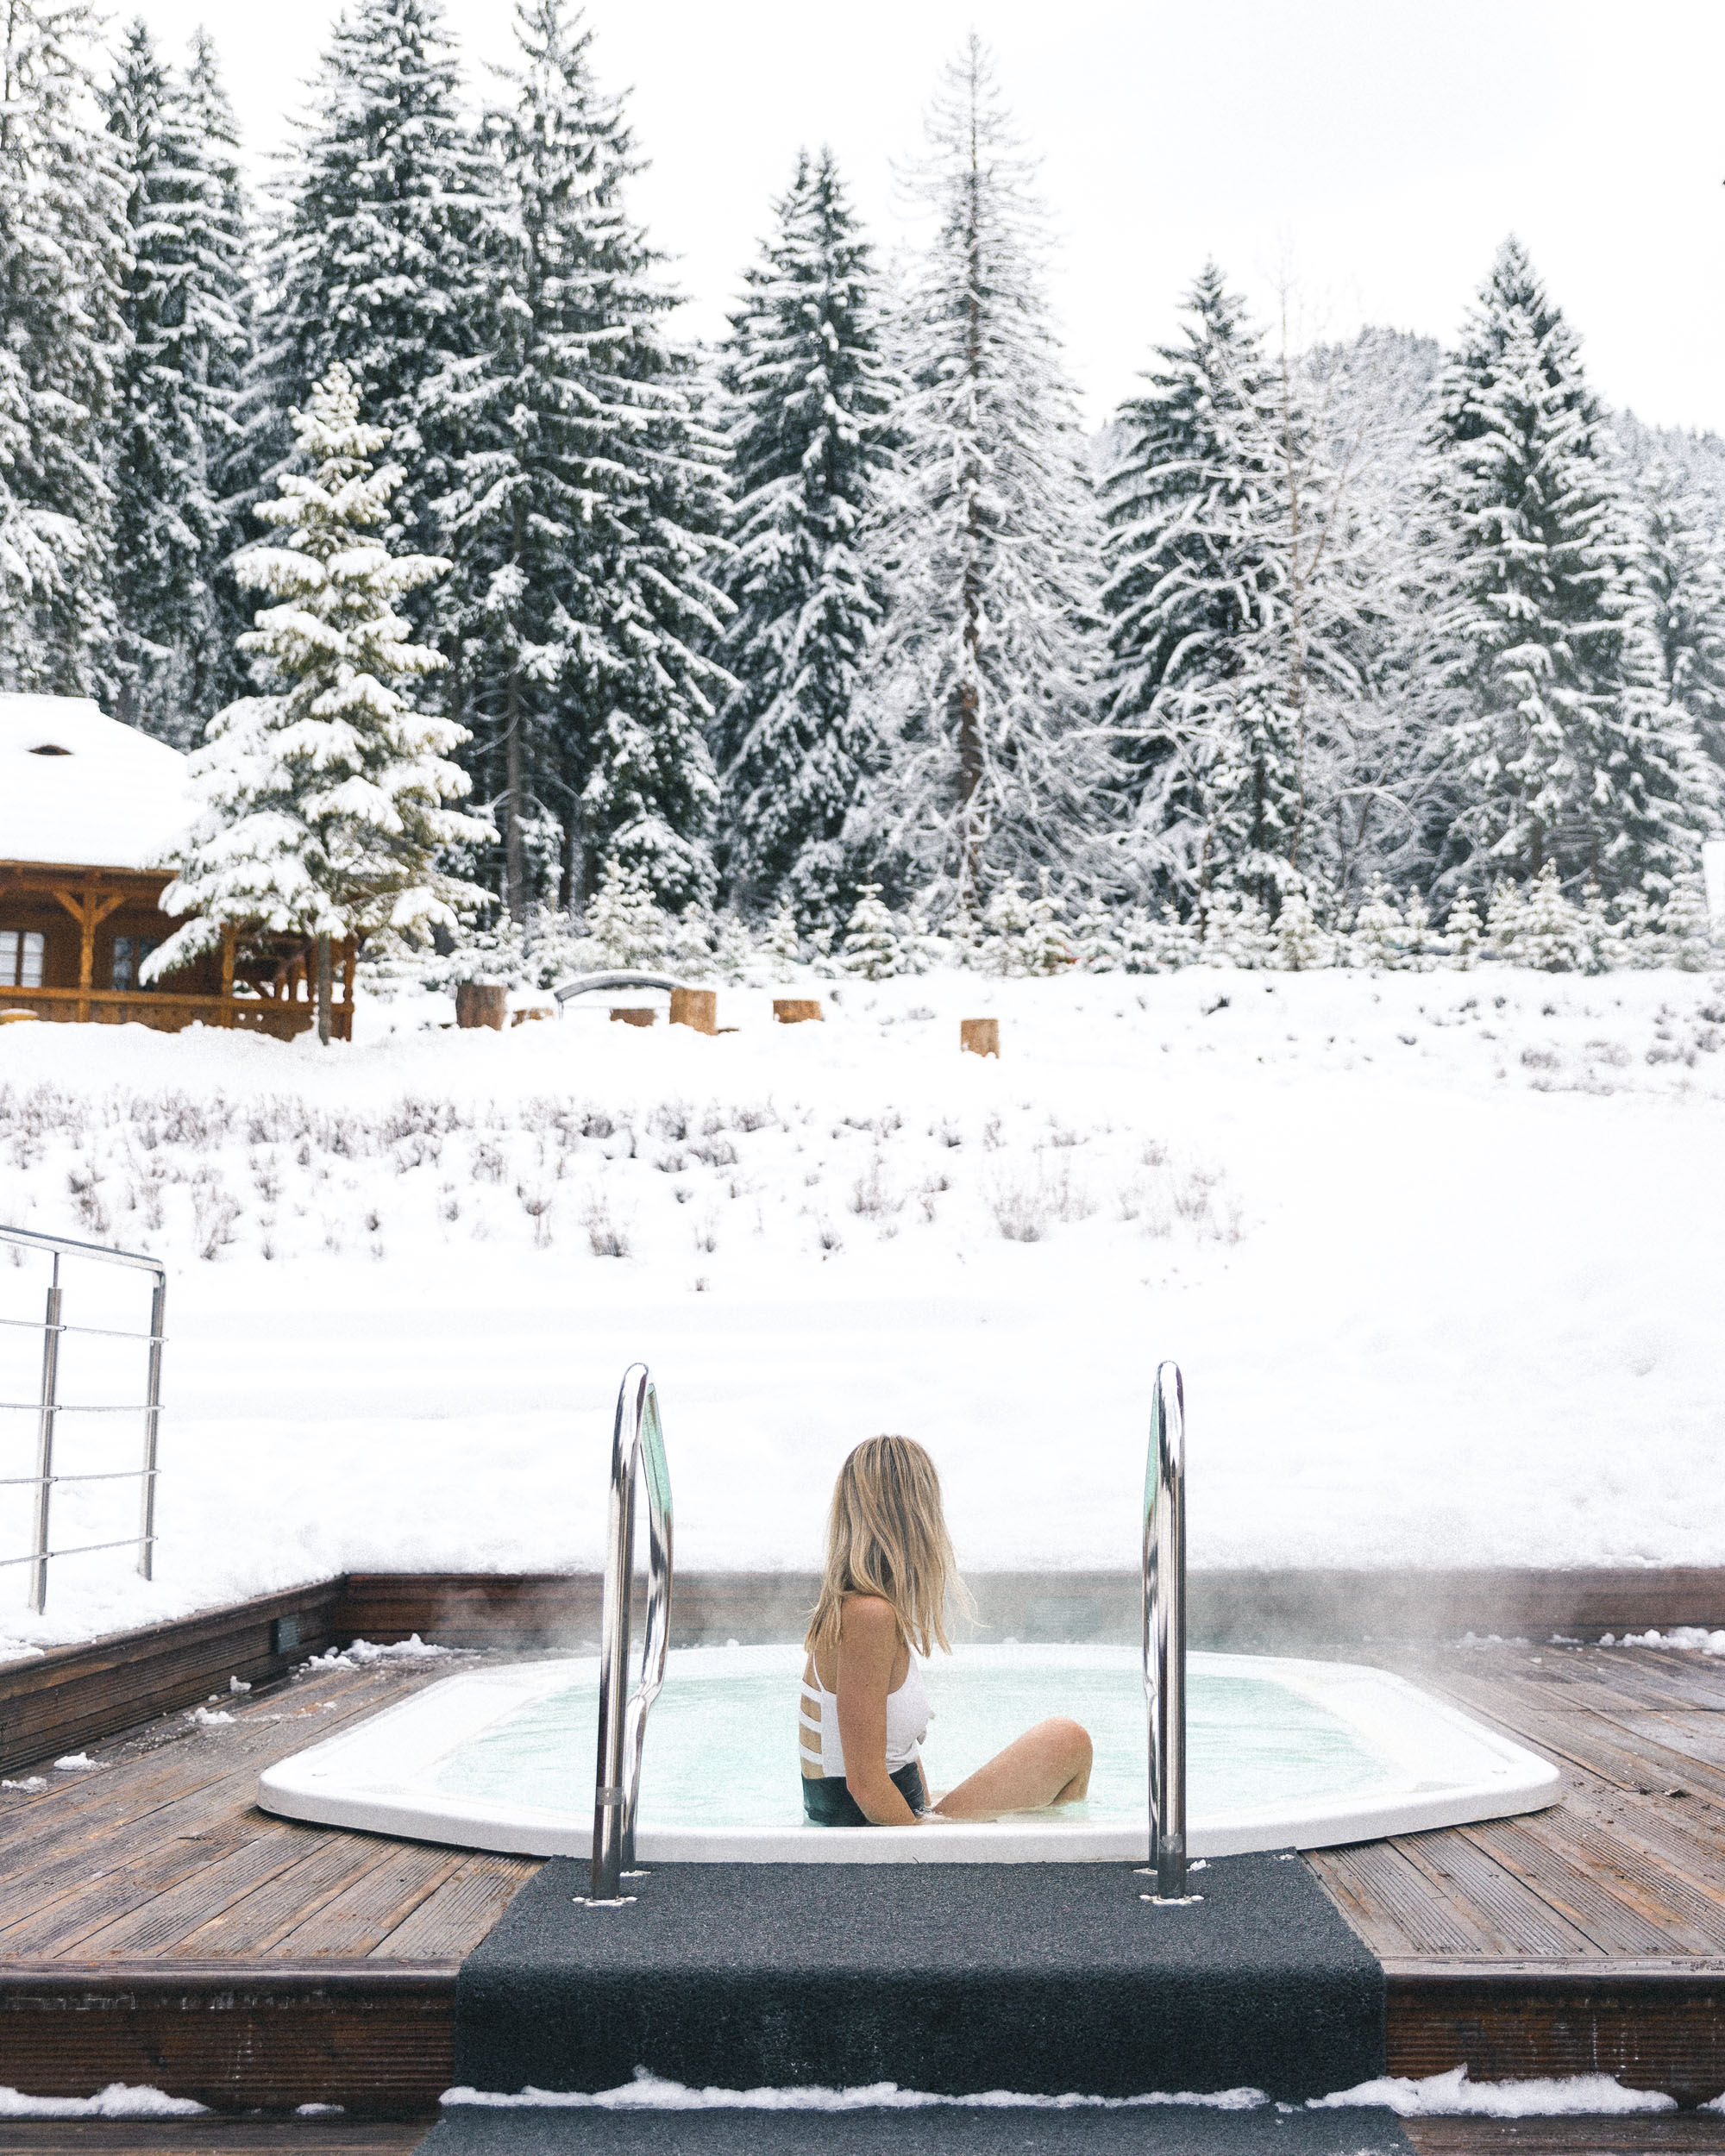 Outdoor spa in winter at Teleferic Grand Hotel in Poiana Brasov, Transylvania, Romania